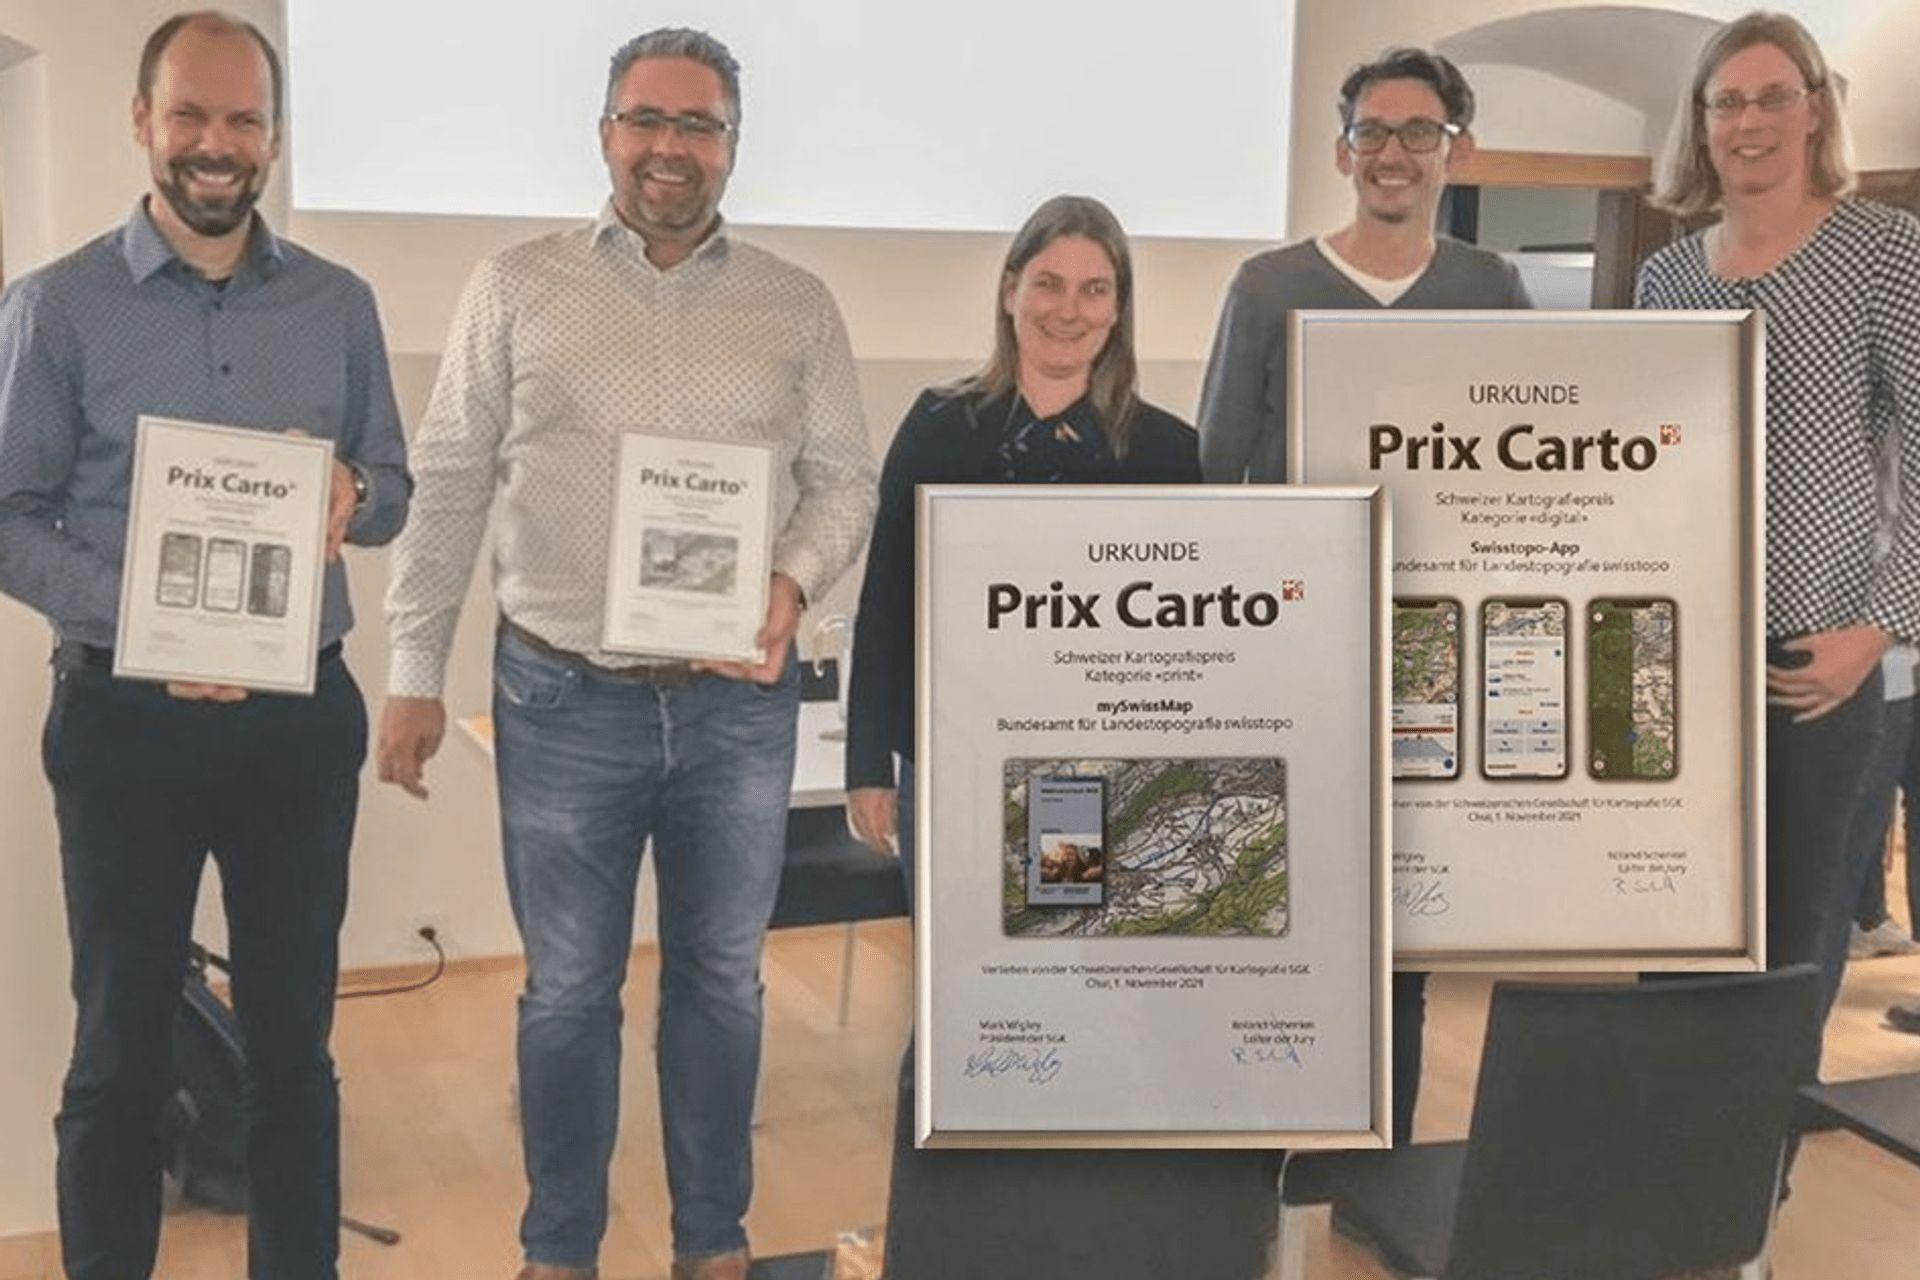 Il team dell'applicazione swisstopo vincitore del "Prix Carto" 2021 a Coira